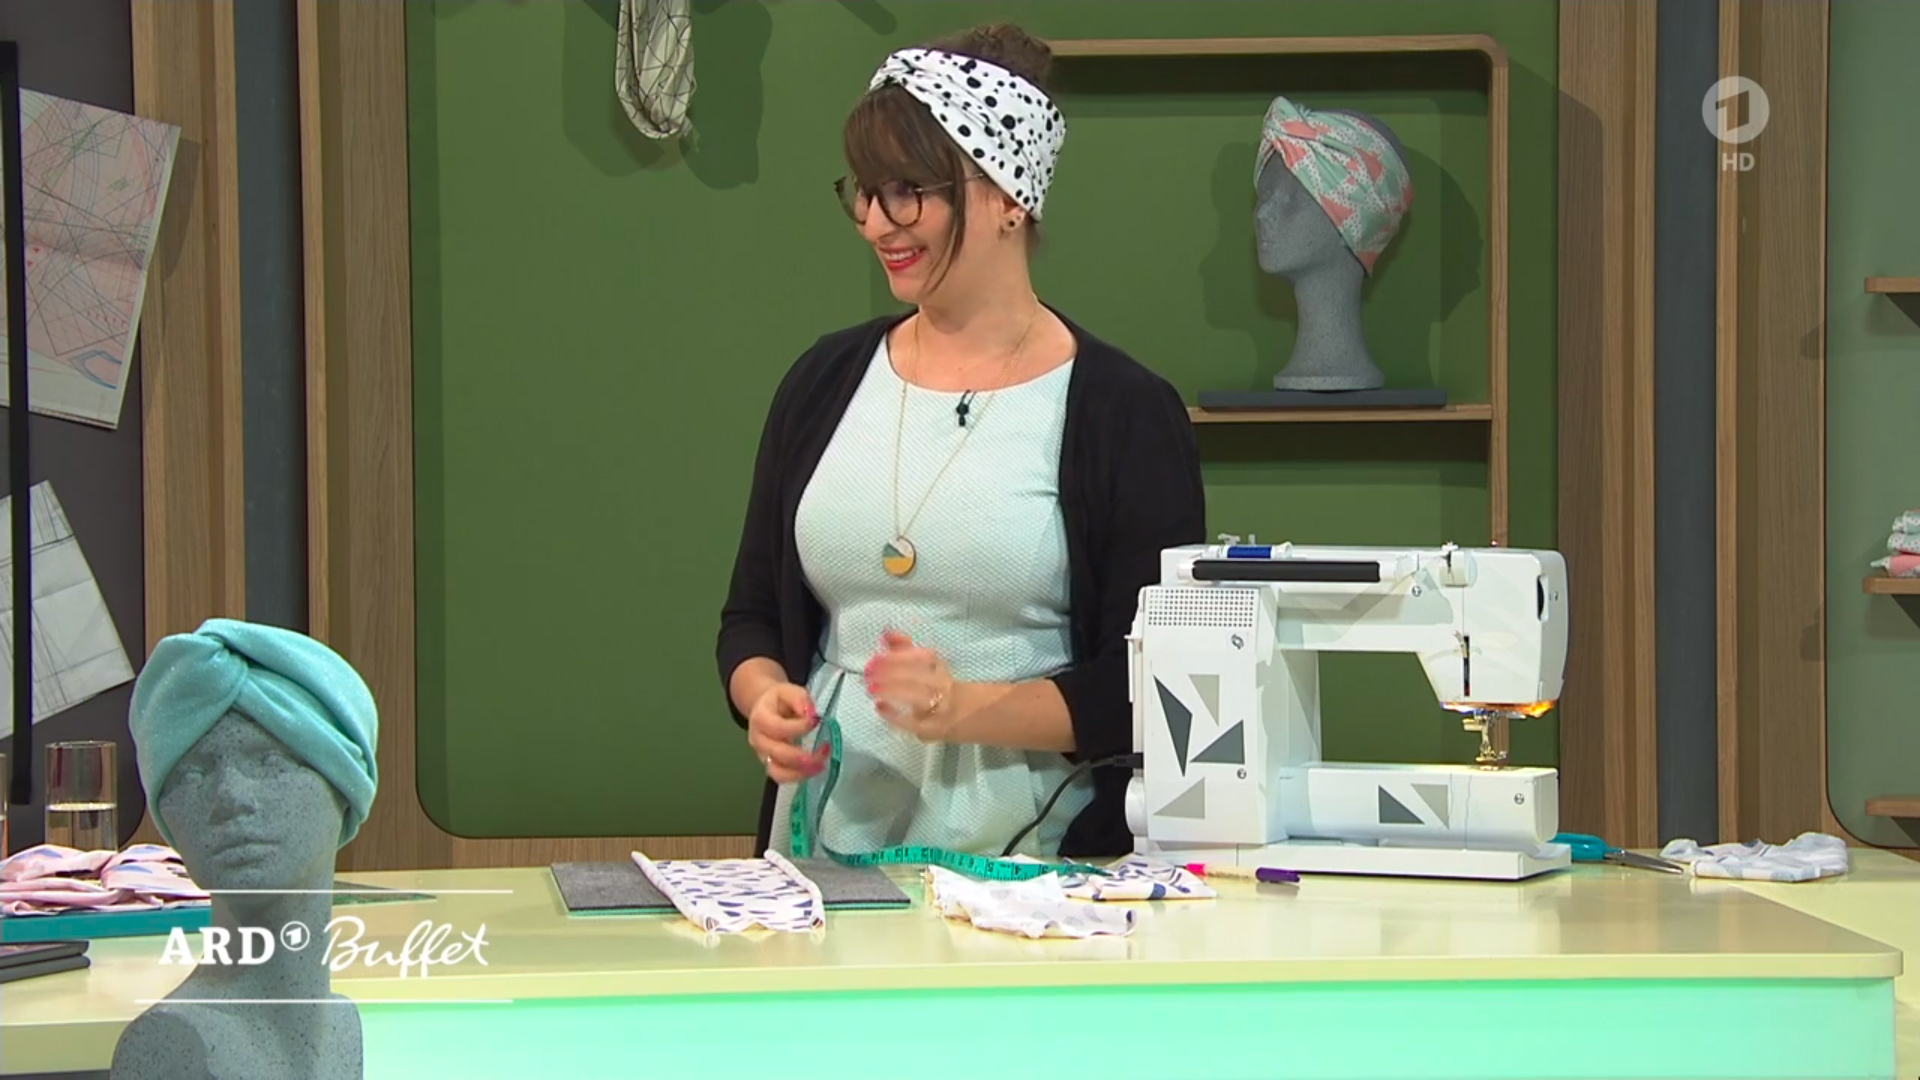 Kreative DIY-Idee zum Selbermachen: Einfaches Turban-Stirnband nähen - aus Jersey oder Sommersweat ganz einfach selbst genäht mit Step-by-Step-Anleitung